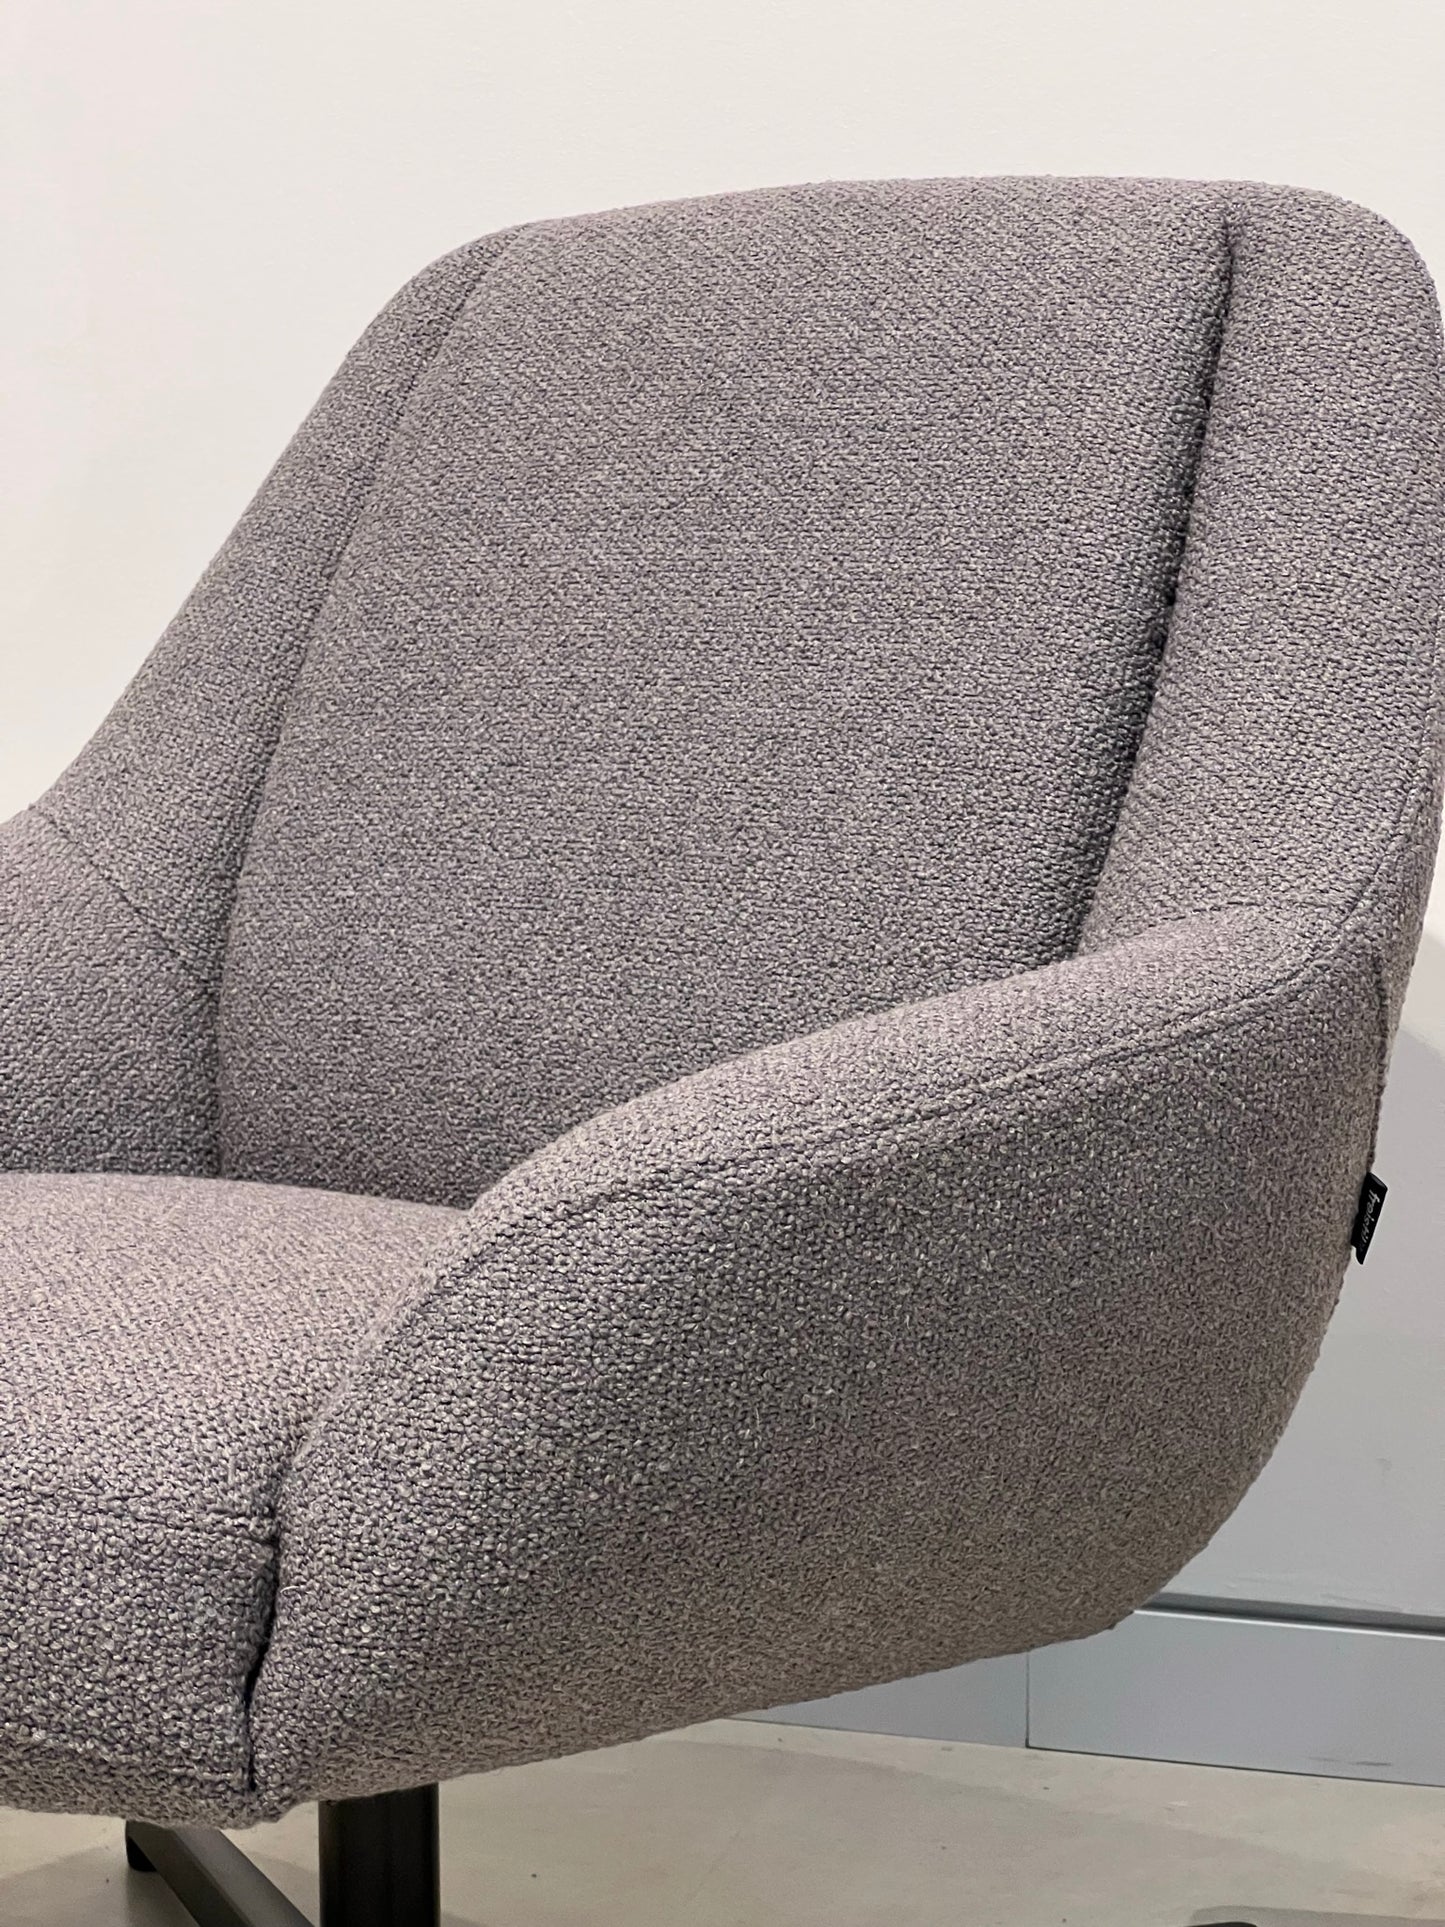 Freistil Rolf Benz 138 Armchair in Grey Fabric Detail